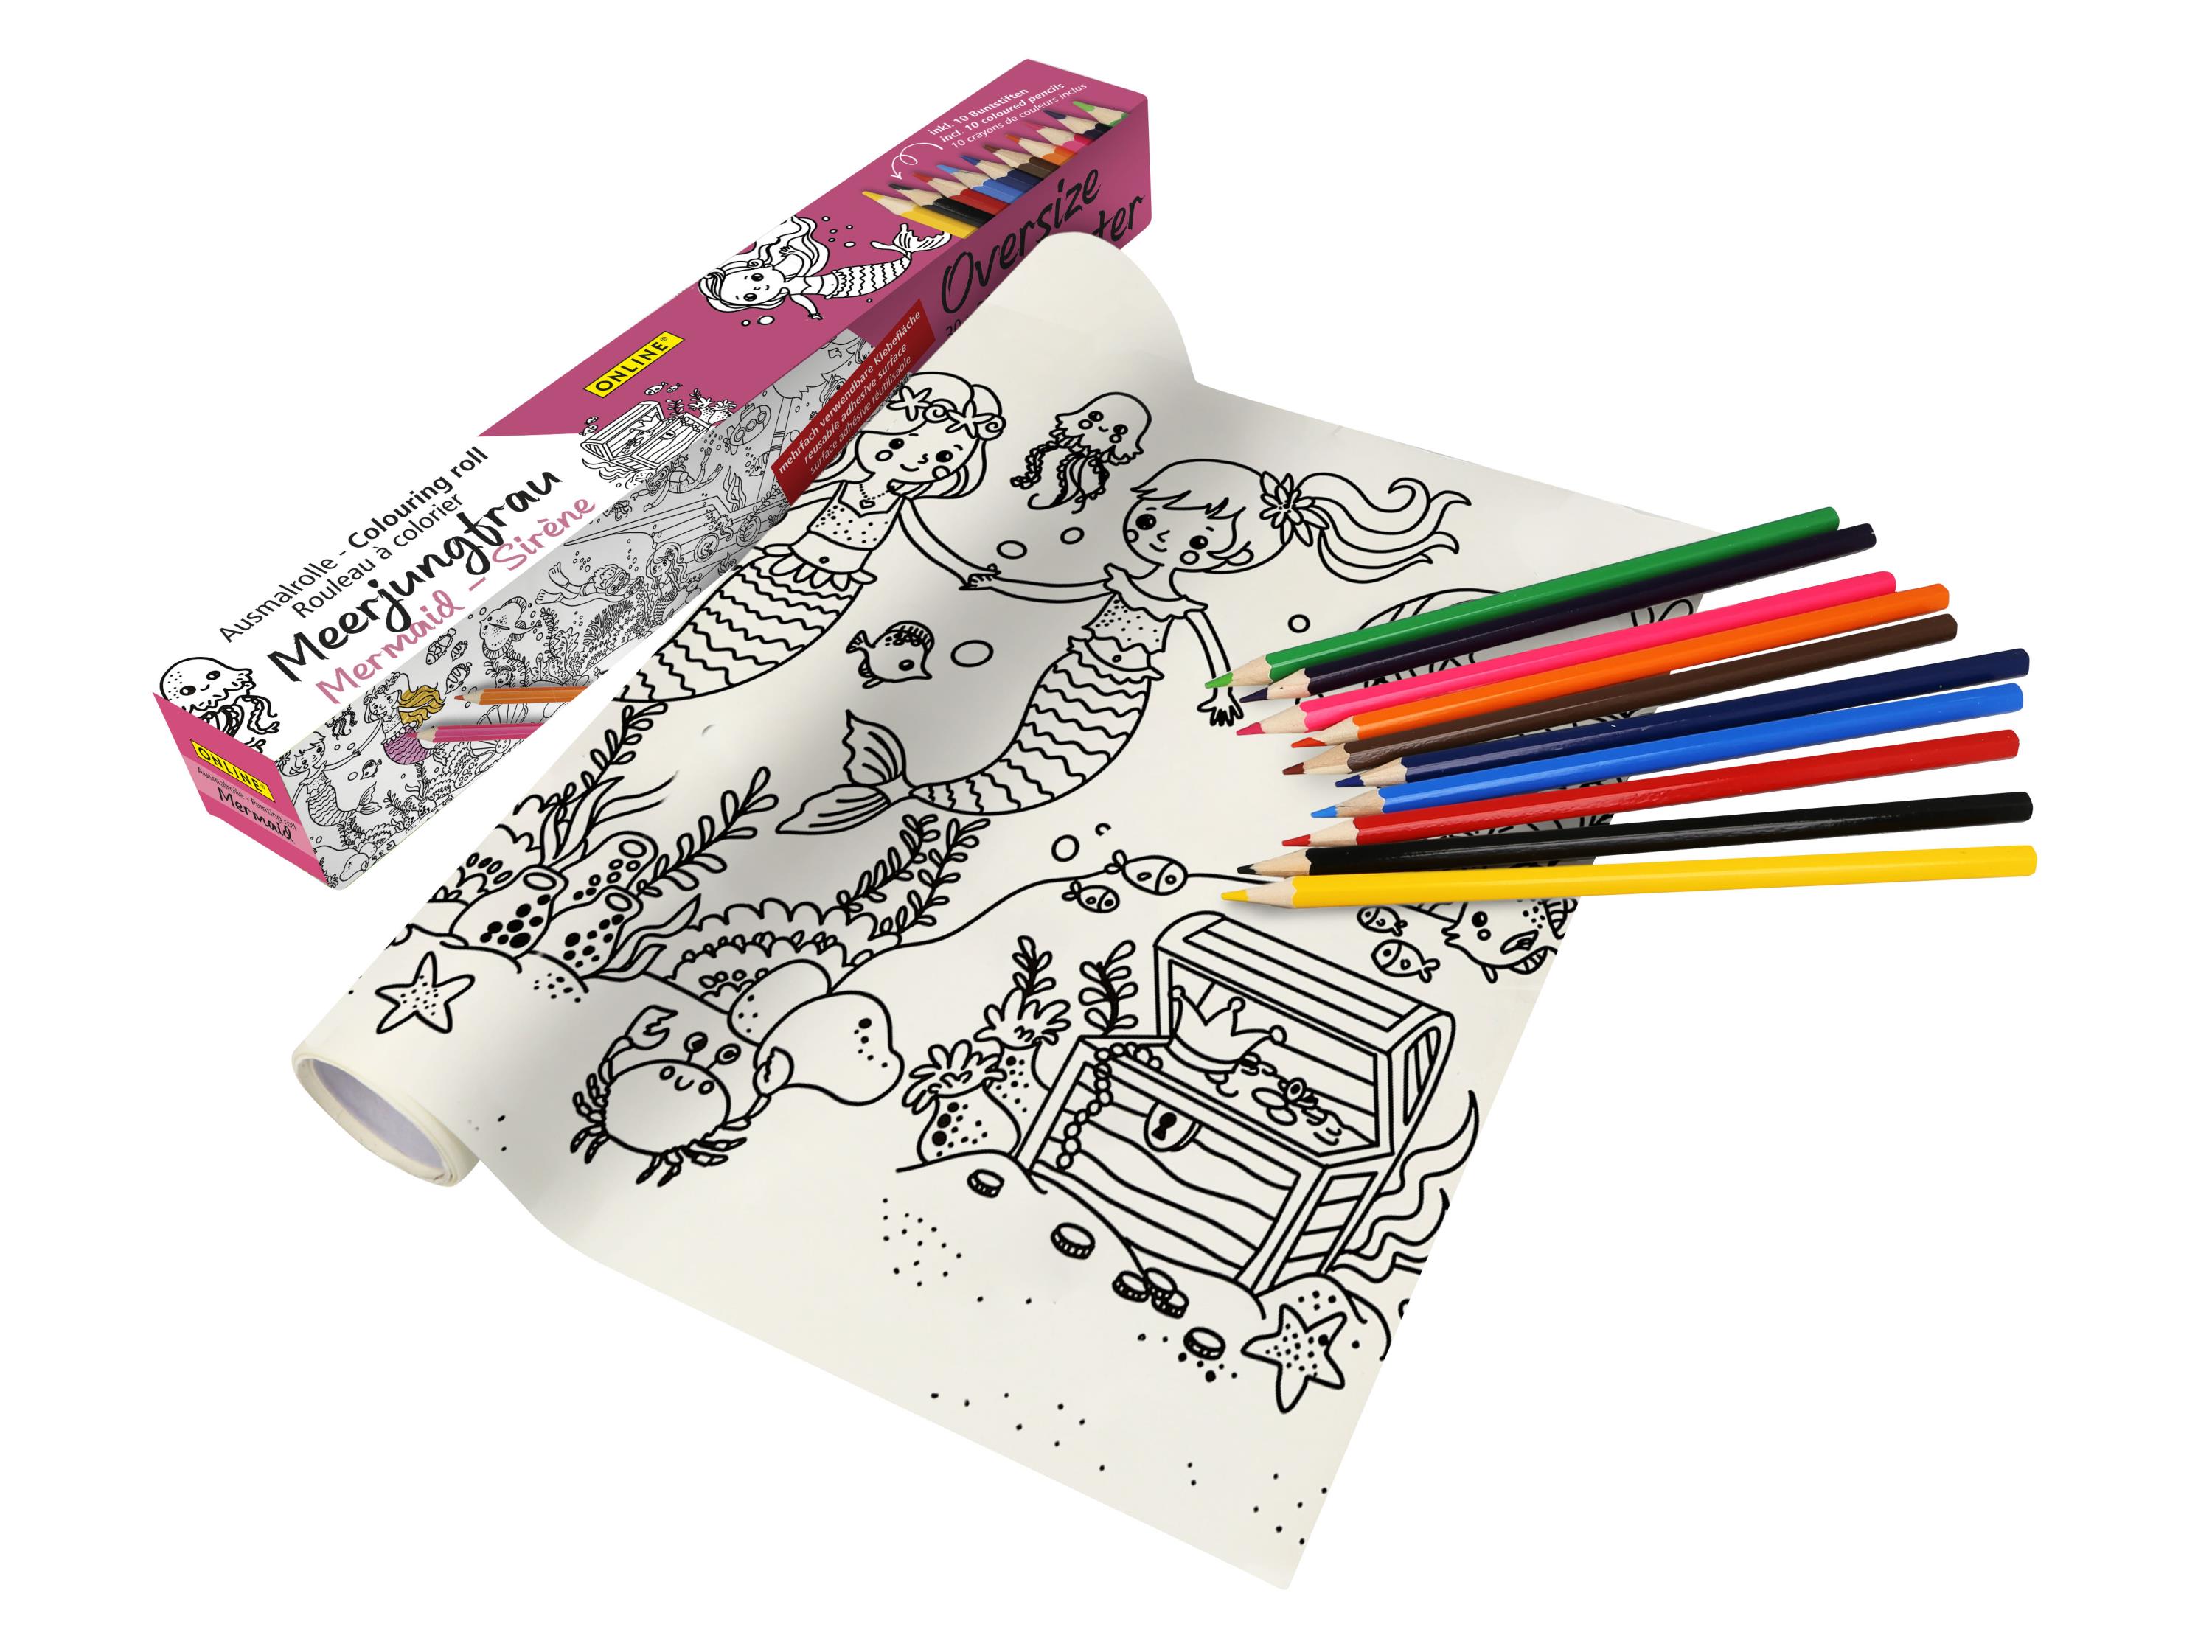 Buntstifte & Malrolle für Kinder zum Ausmalen, 30 x 200 cm, Selbstklebende Zeichenrolle mit Meerjungfrau-Motiv